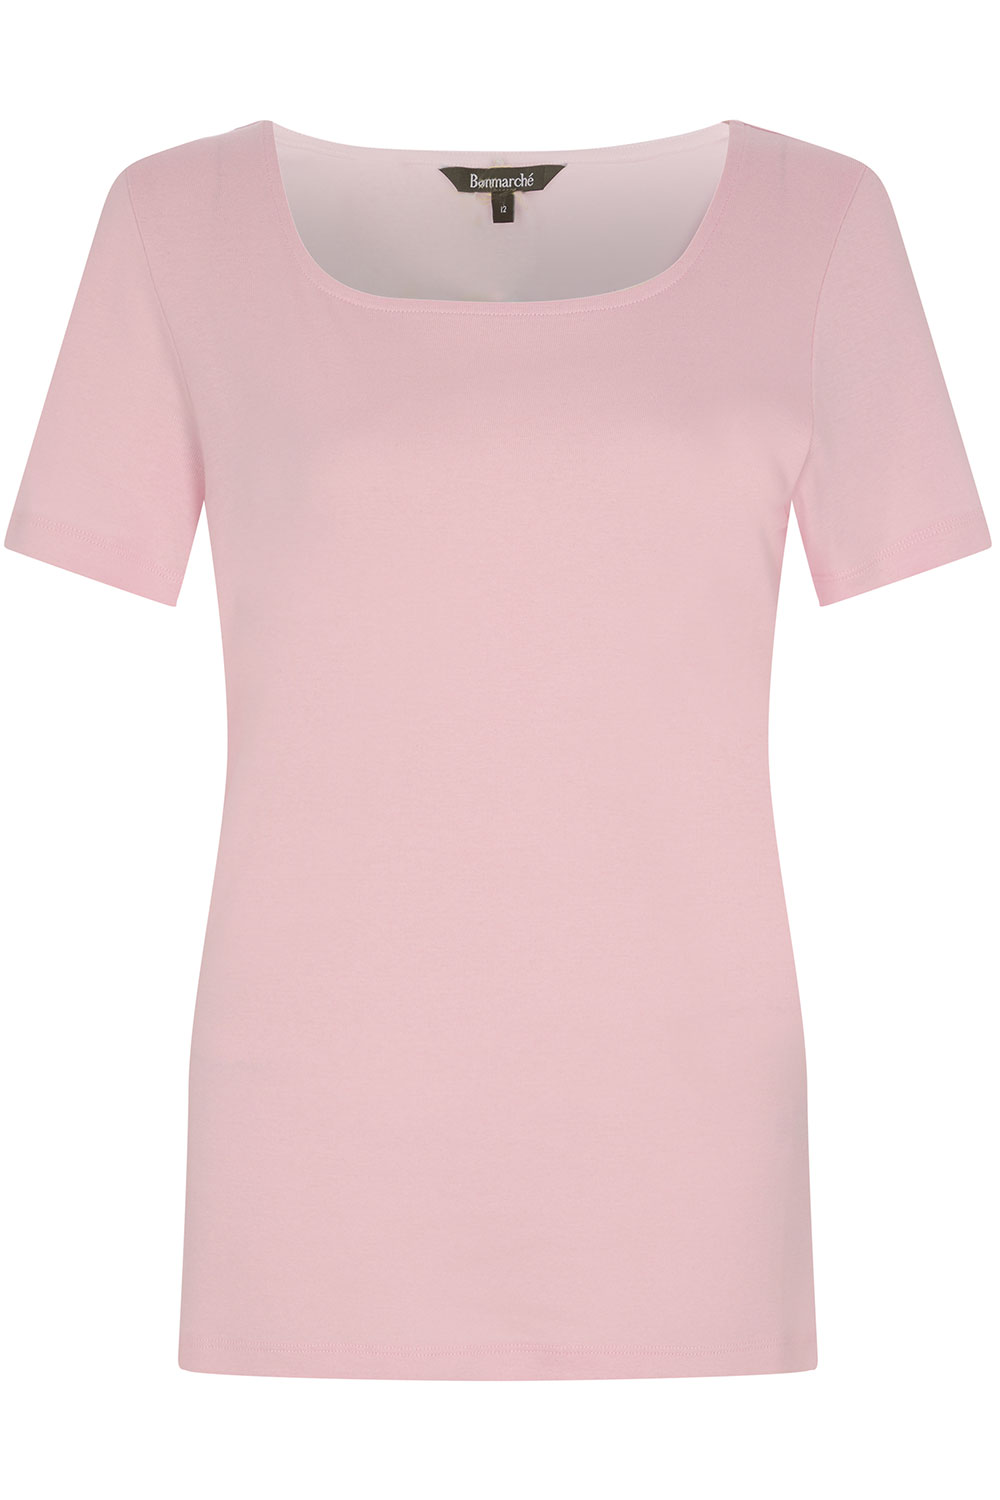 Short Sleeve Plain Square Neck T-Shirt | Bonmarché